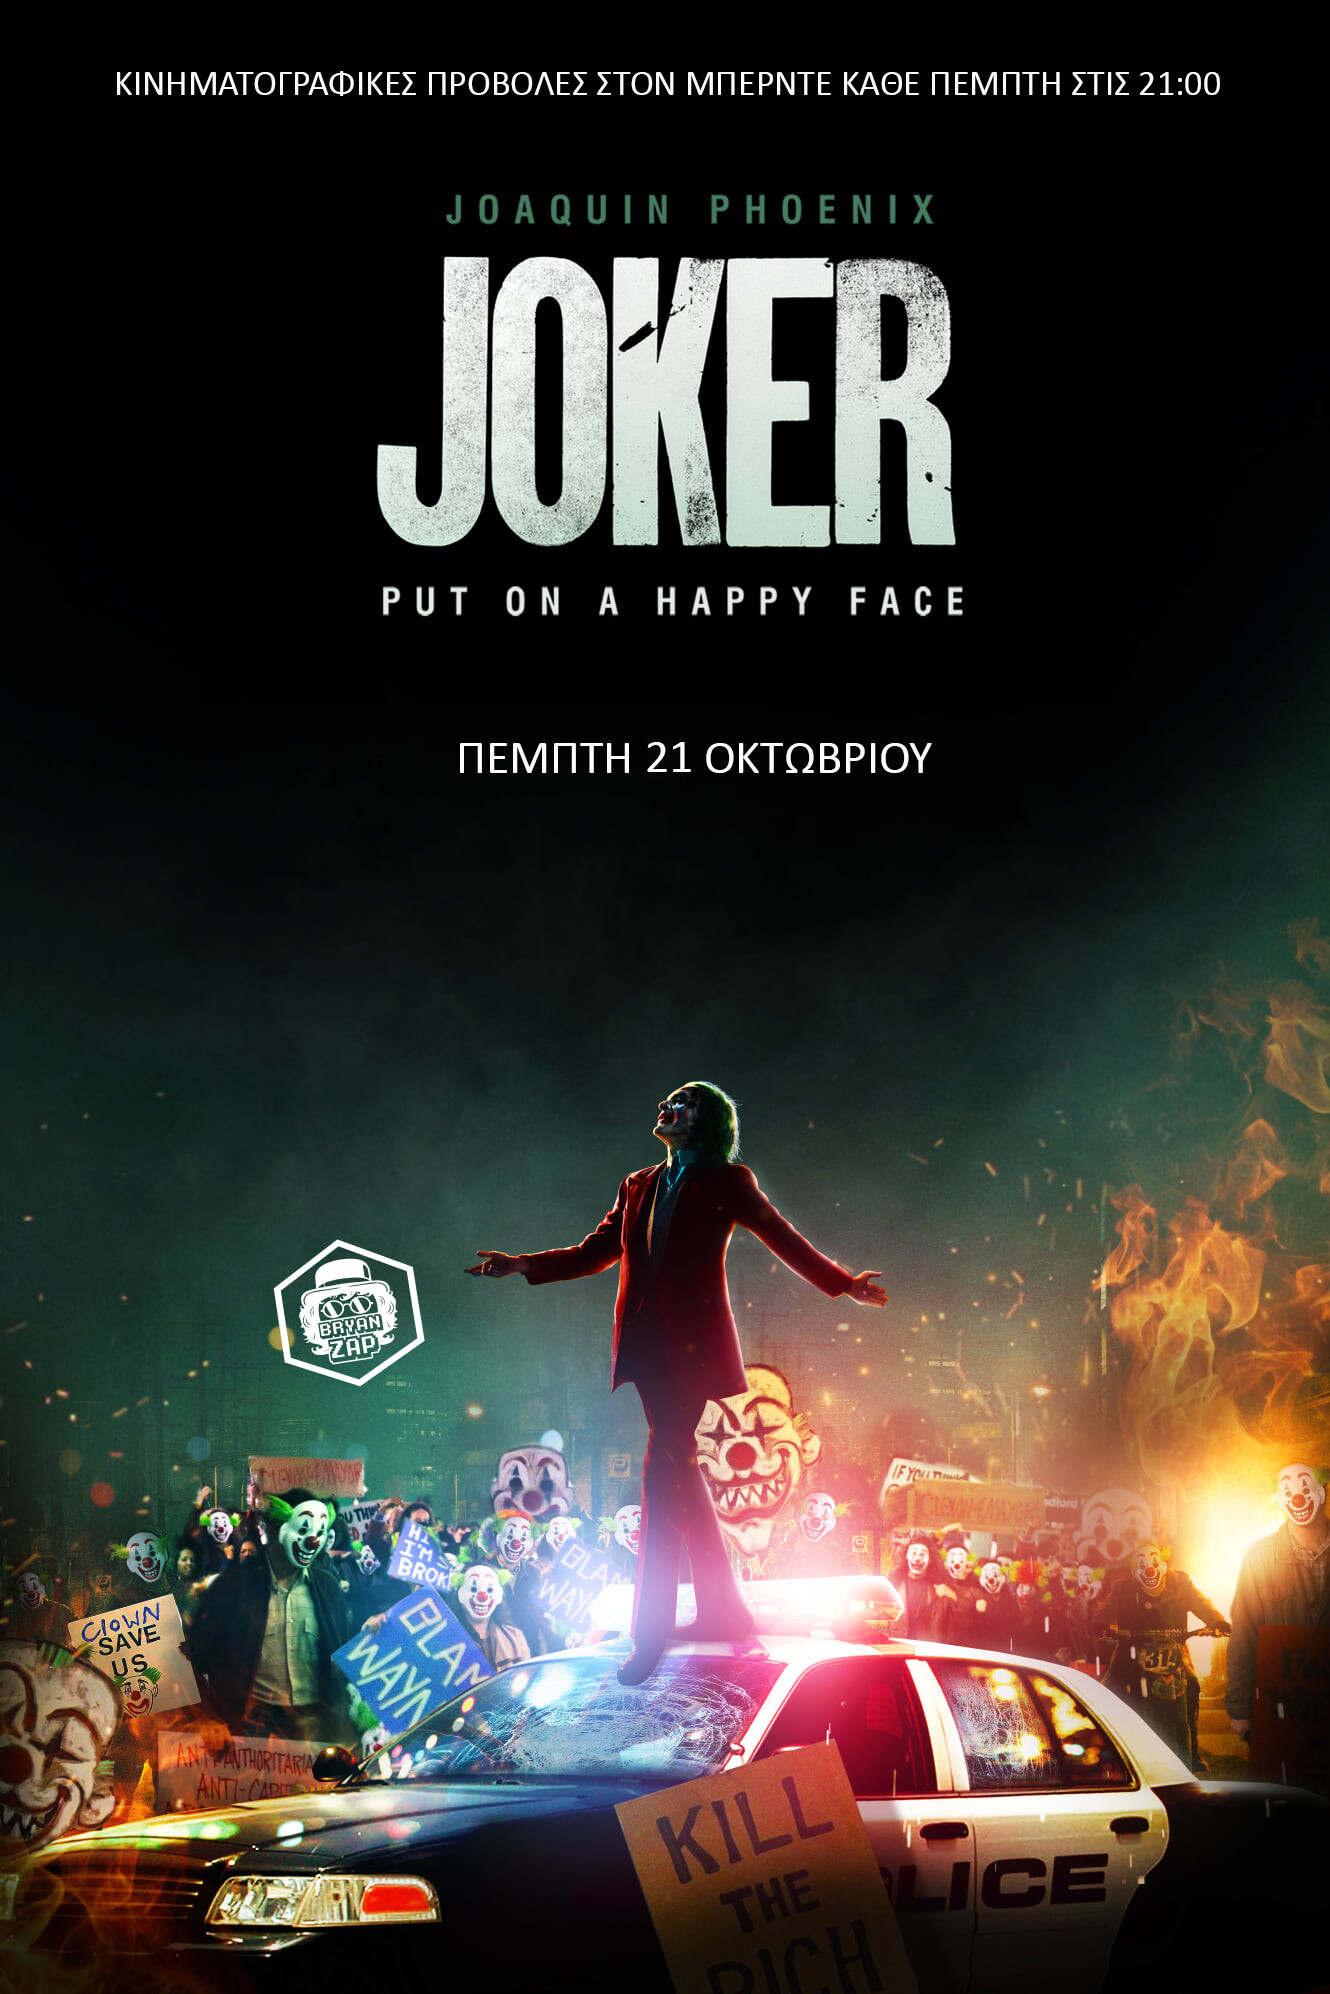 Προβολη της ταινιας “Joker” – Μπερντές